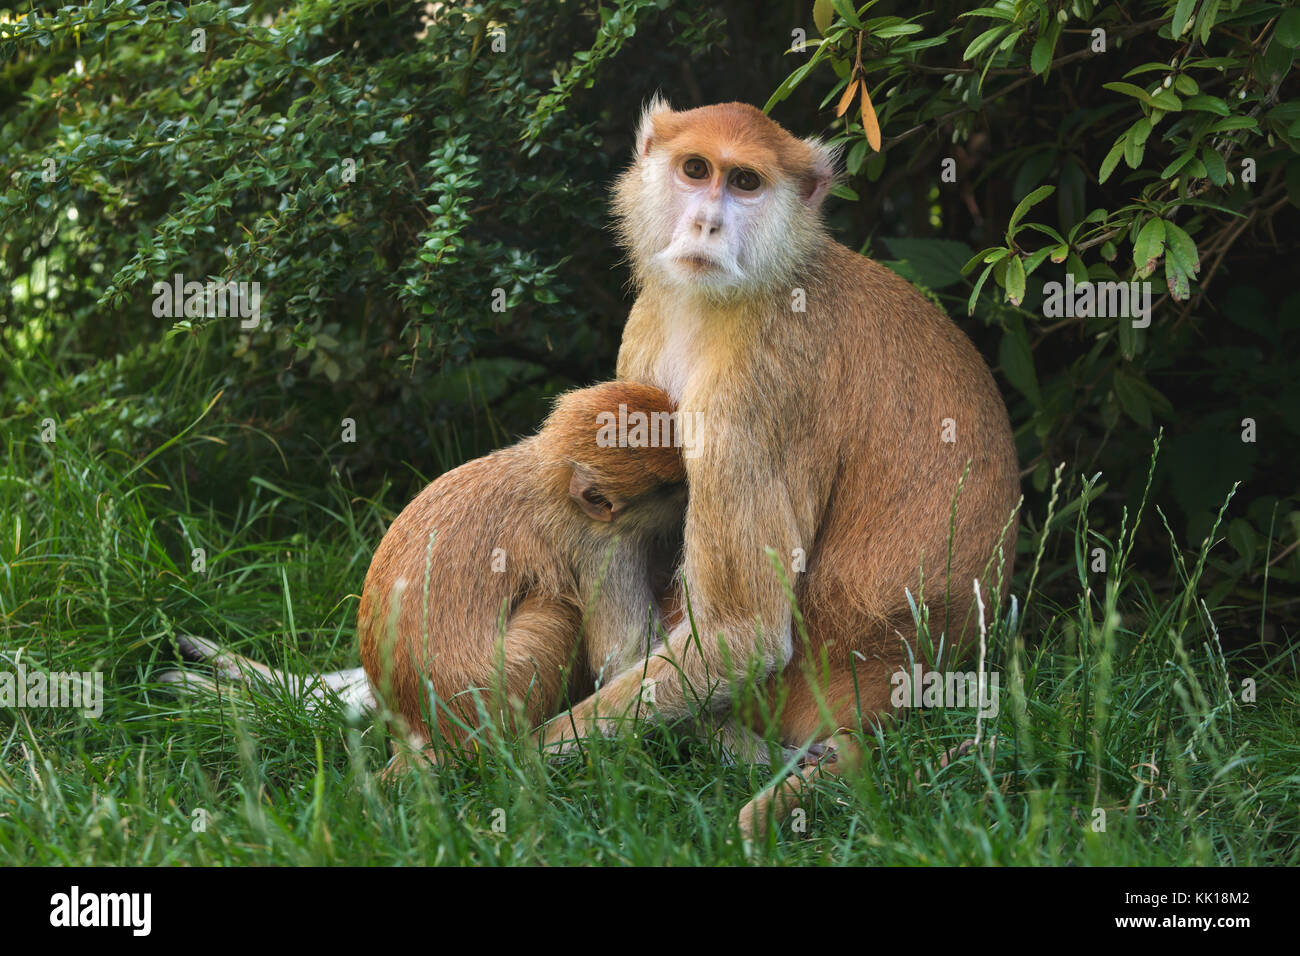 Patas-Affe (Erythrocebus patas), auch bekannt als Husarenaffen, der sein neugeborenes Baby füttert. Stockfoto